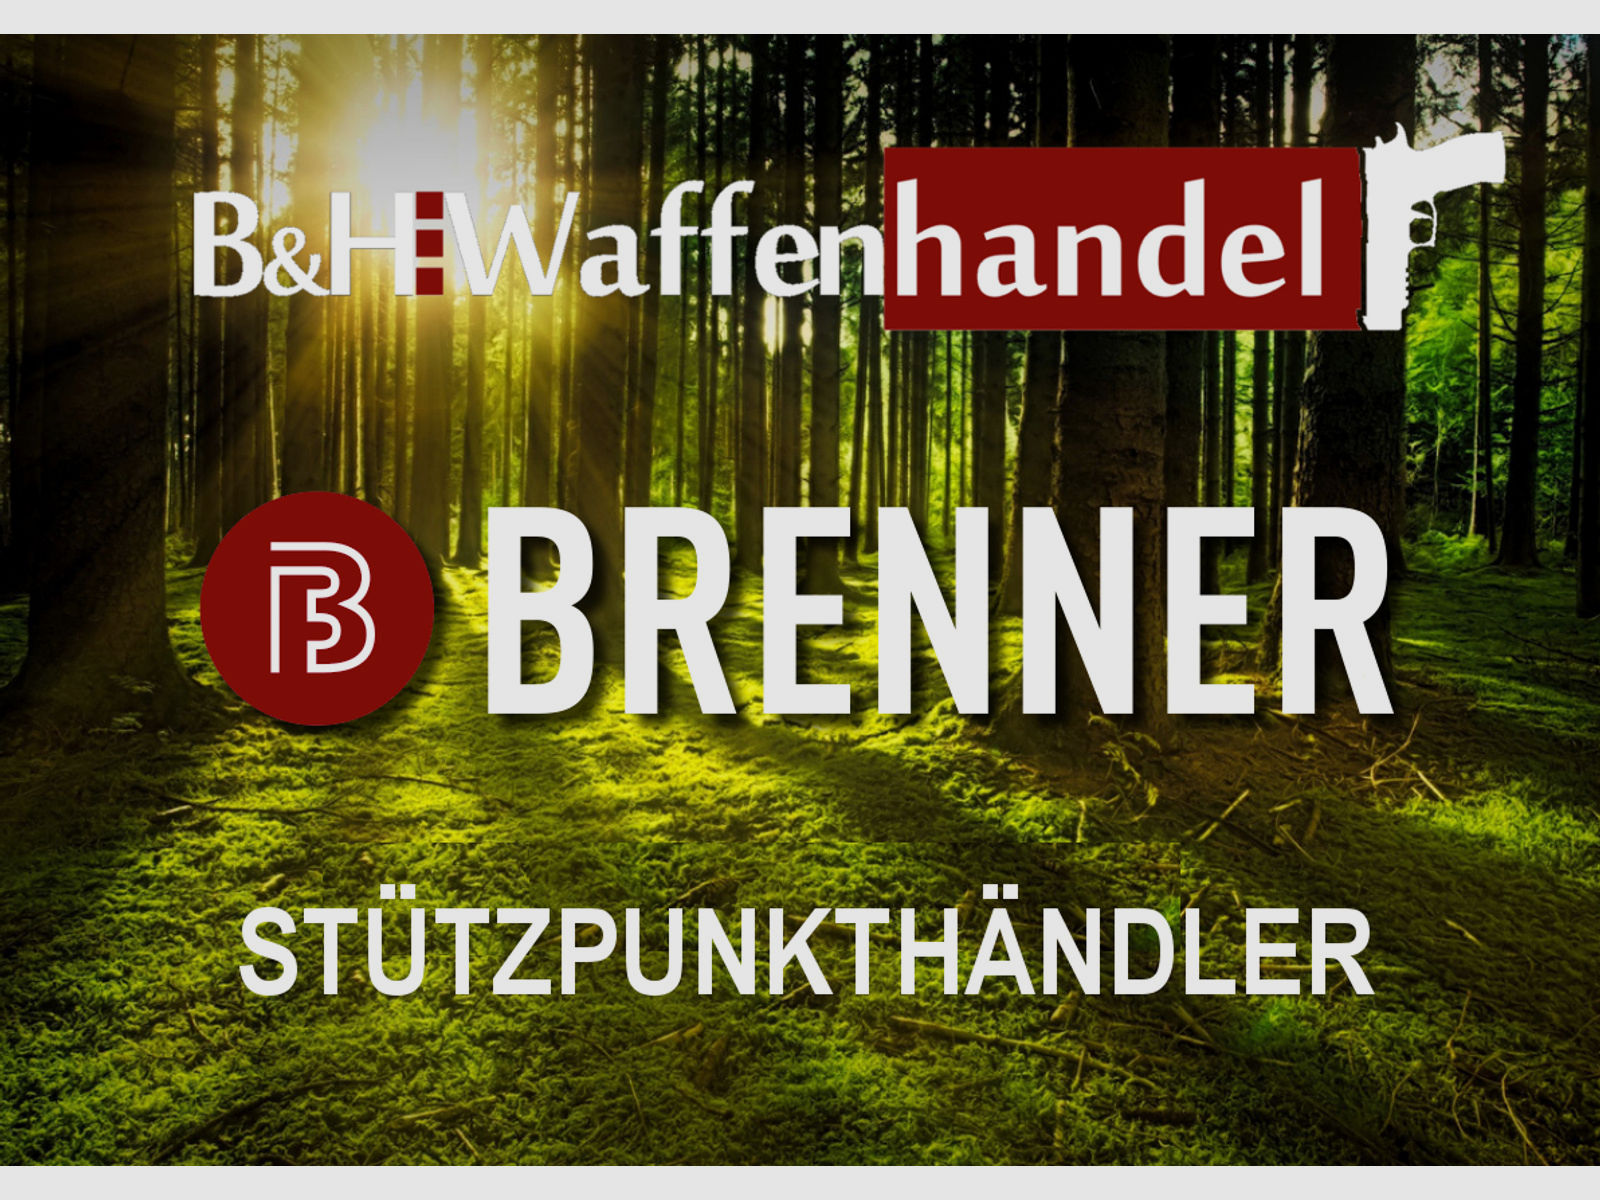 Auf Lager: Brenner BR20 Holzschaft mit Steiner Ranger 3-12x56 Repetierbüchse BR 20 (Best.Nr.: BR20WP9) Finanzierung möglich